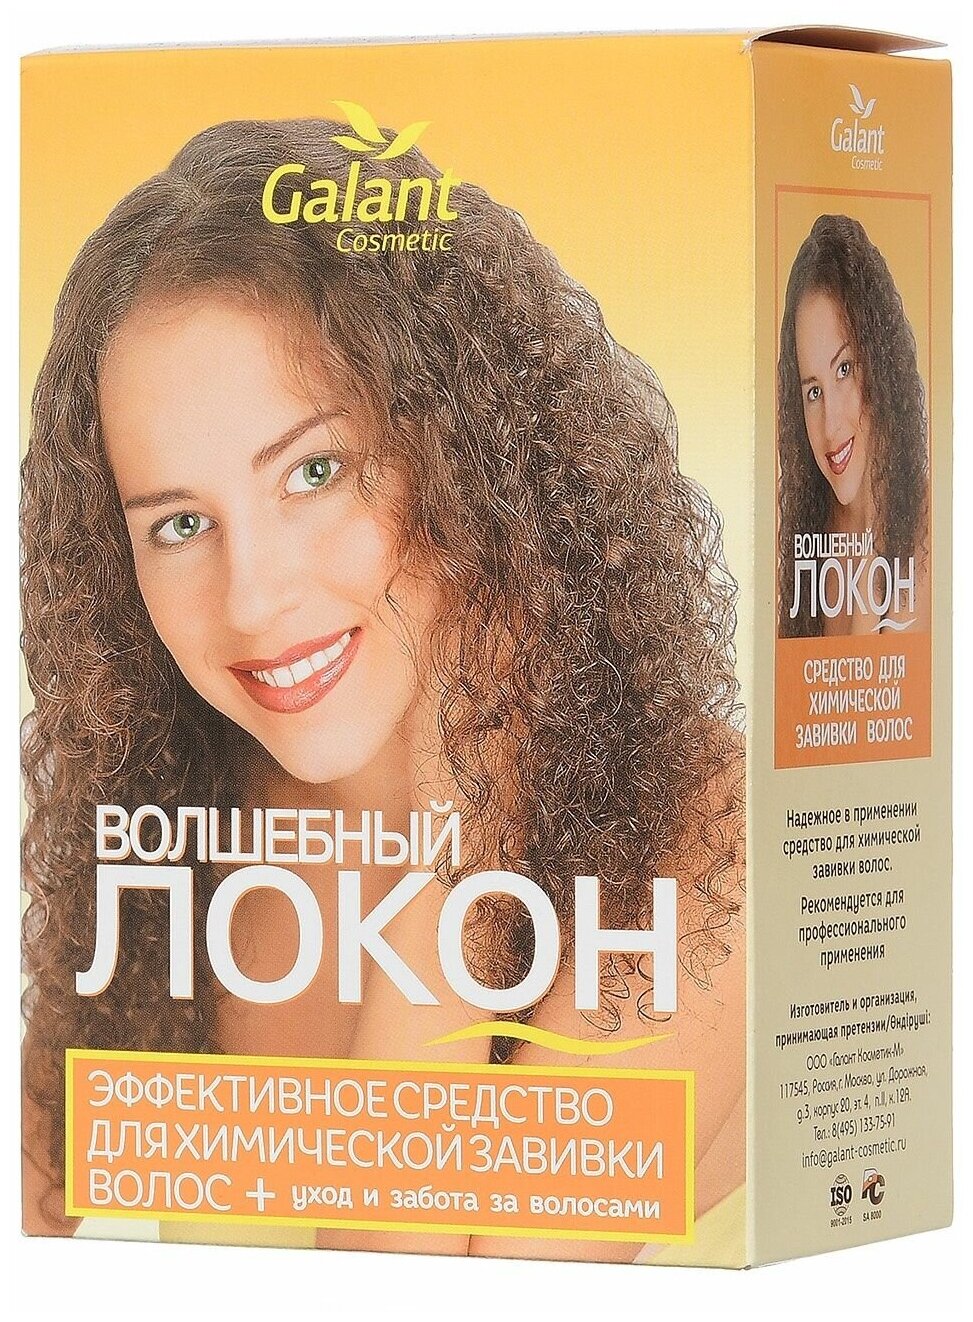 Galant Cosmetic Набор для химической завивки волос Волшебный локон